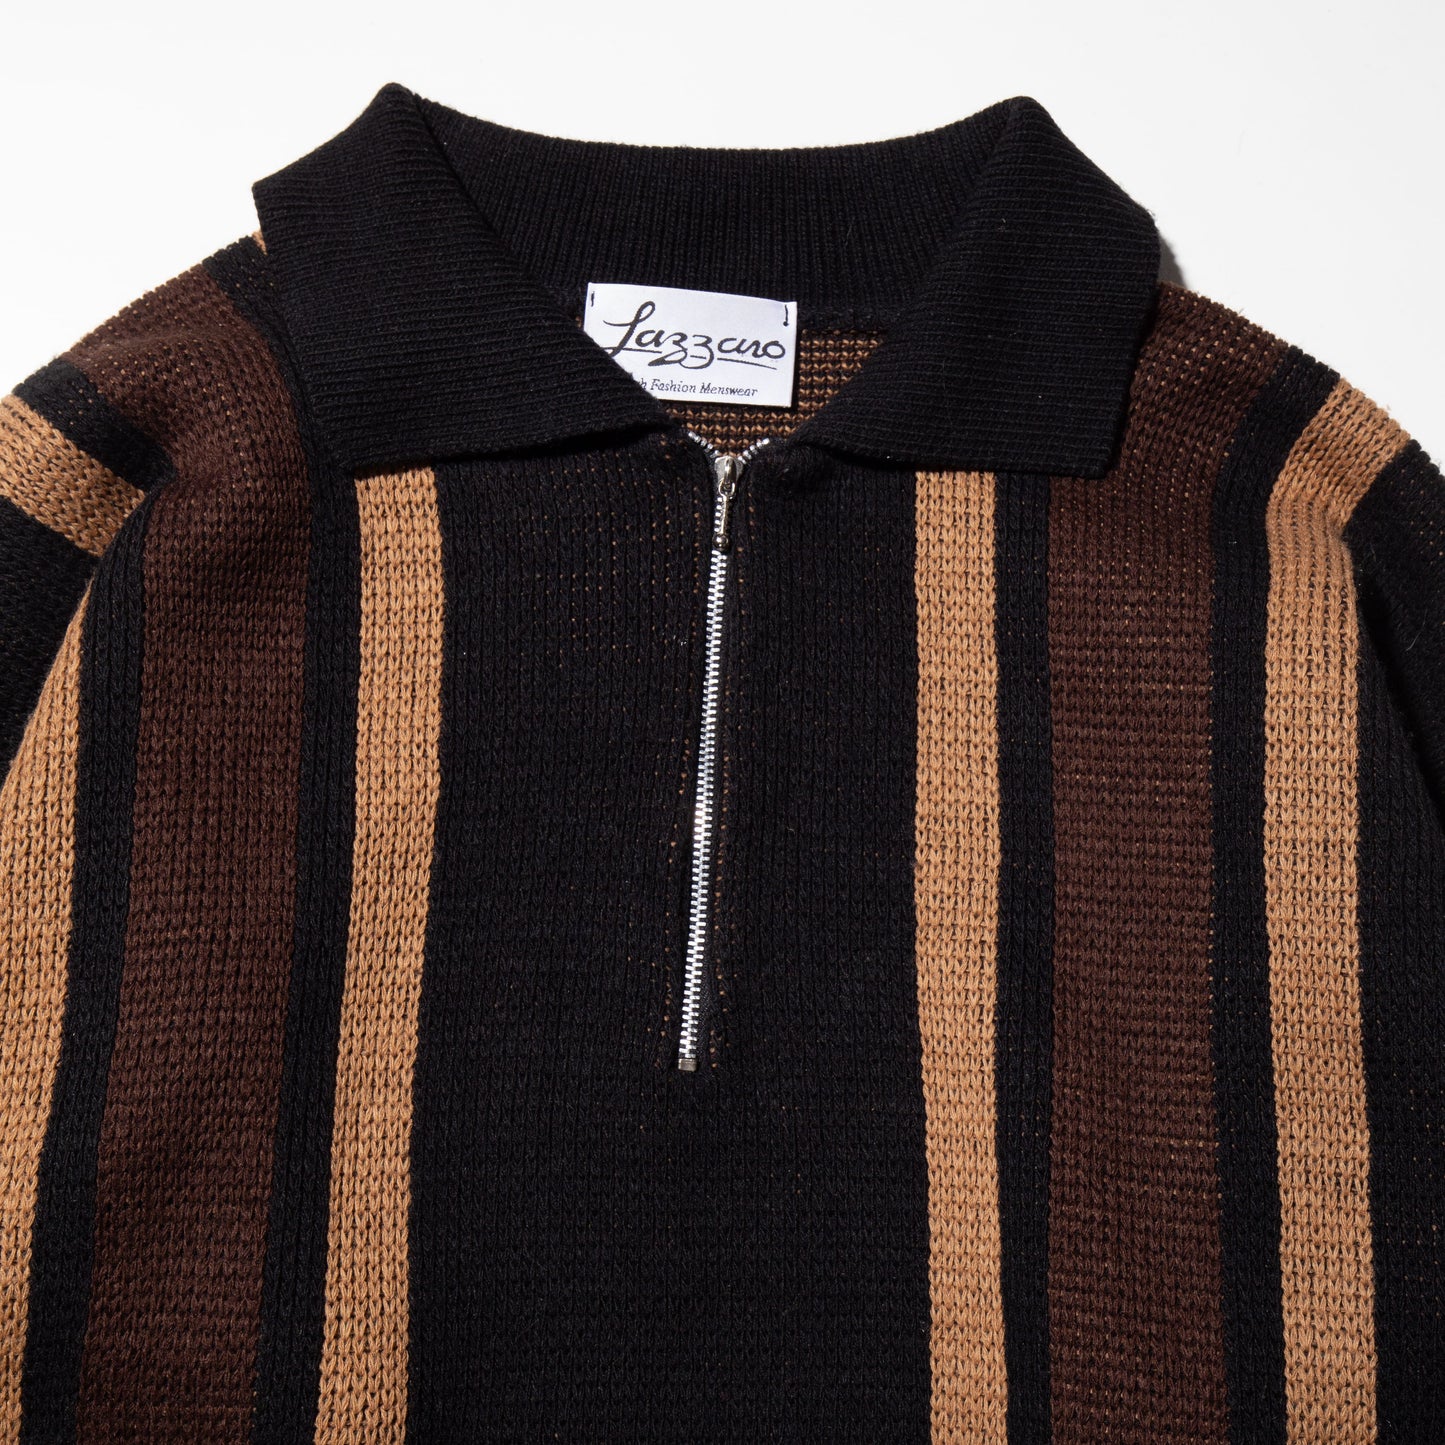 vintage line half zip sweater